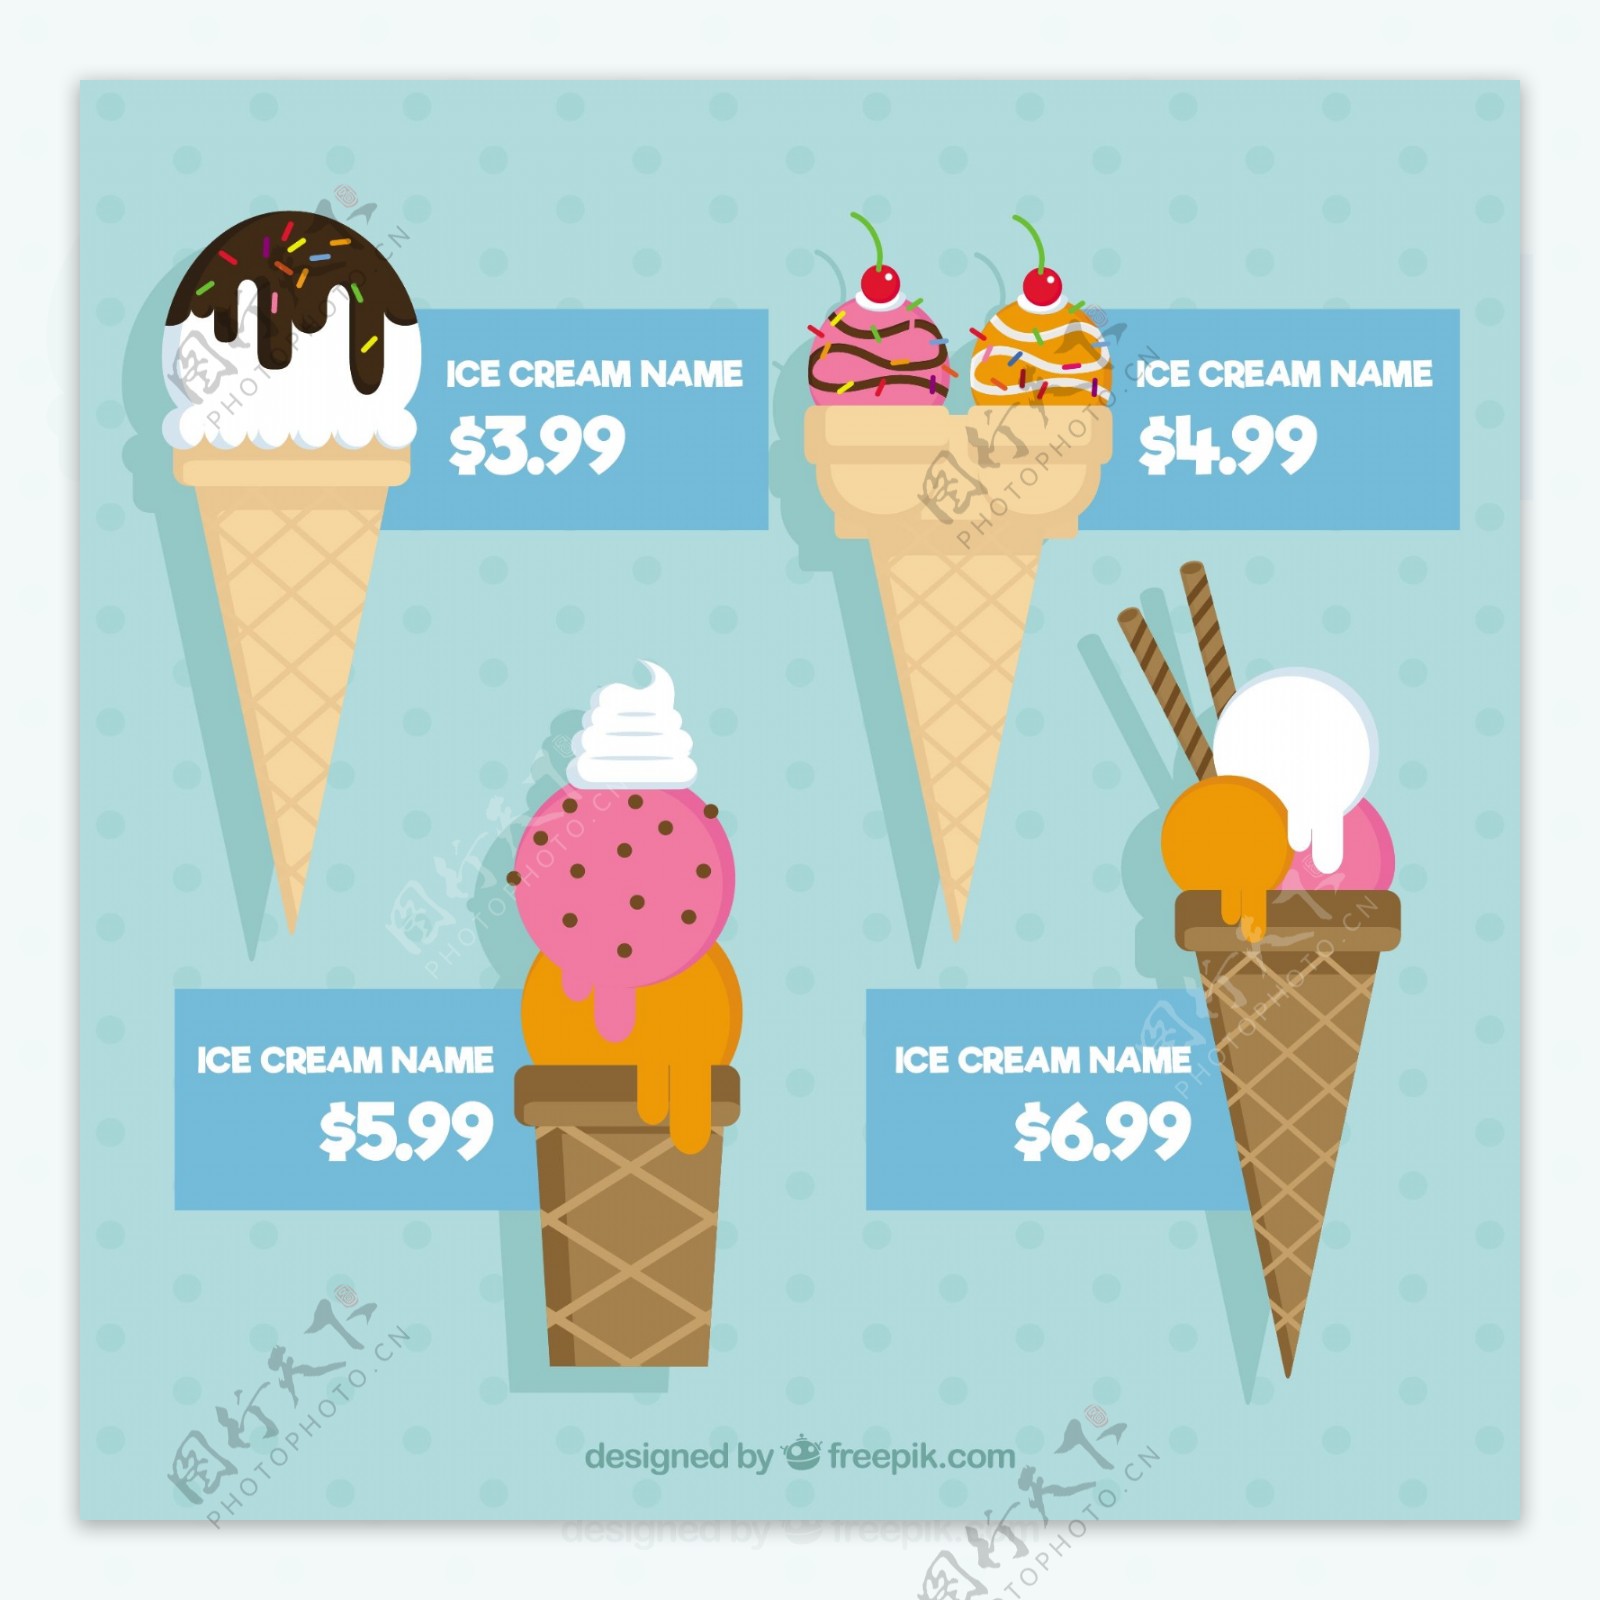 手绘扁平风格锥体冰淇淋价格标签